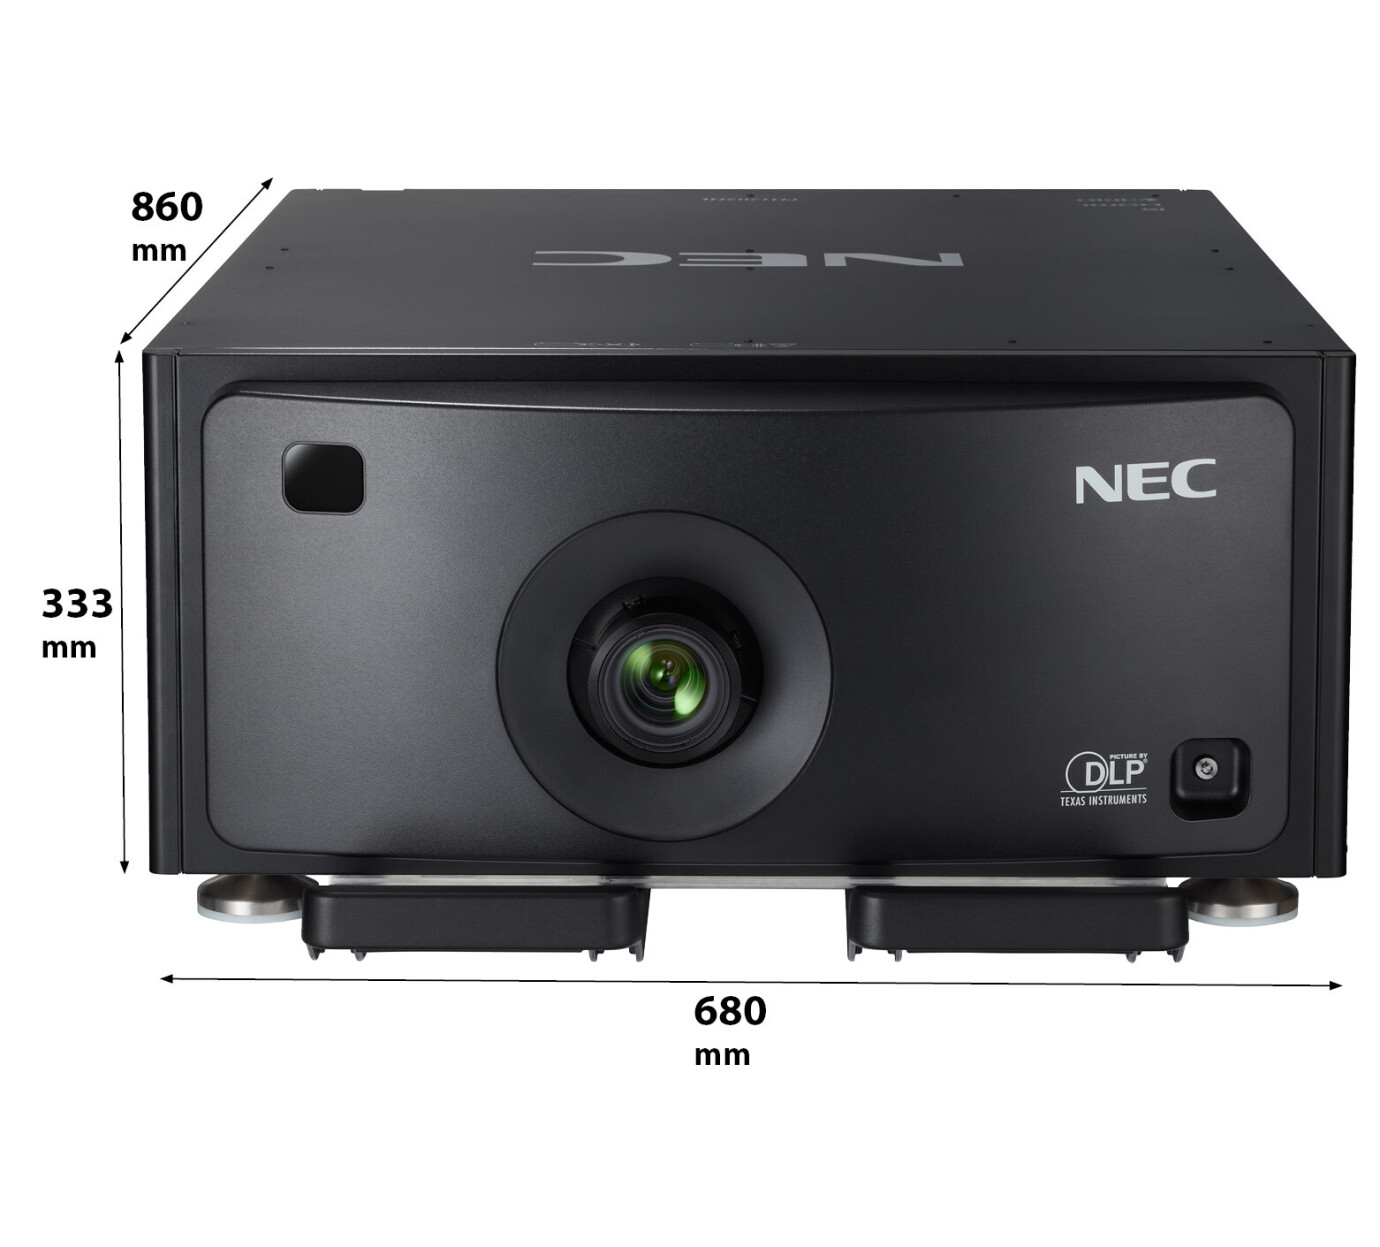 Vorschau: NEC PH1202HL Installationsbeamer mit 12000 ANSI-Lumen und Full-HD Auflösung